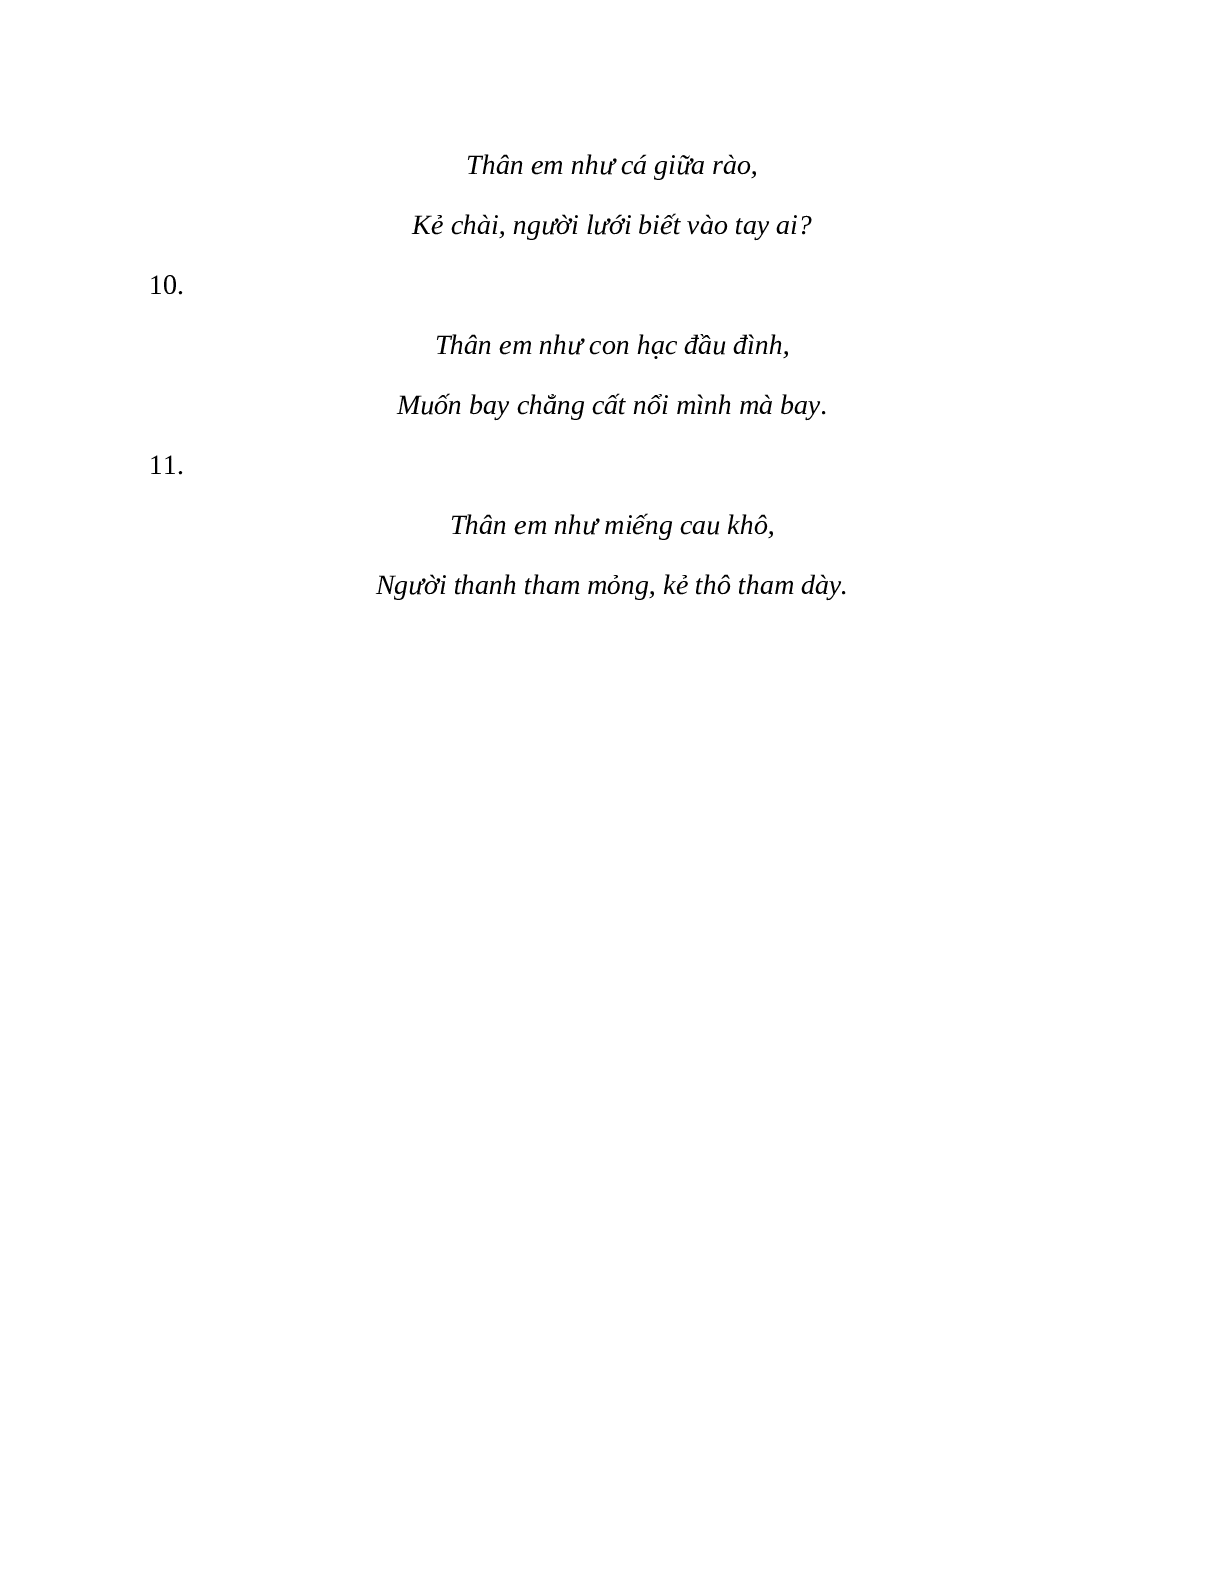 Sơ đồ tư duy bài Những câu hát than thân dễ nhớ, ngắn nhất - Ngữ văn lớp 7 (trang 9)